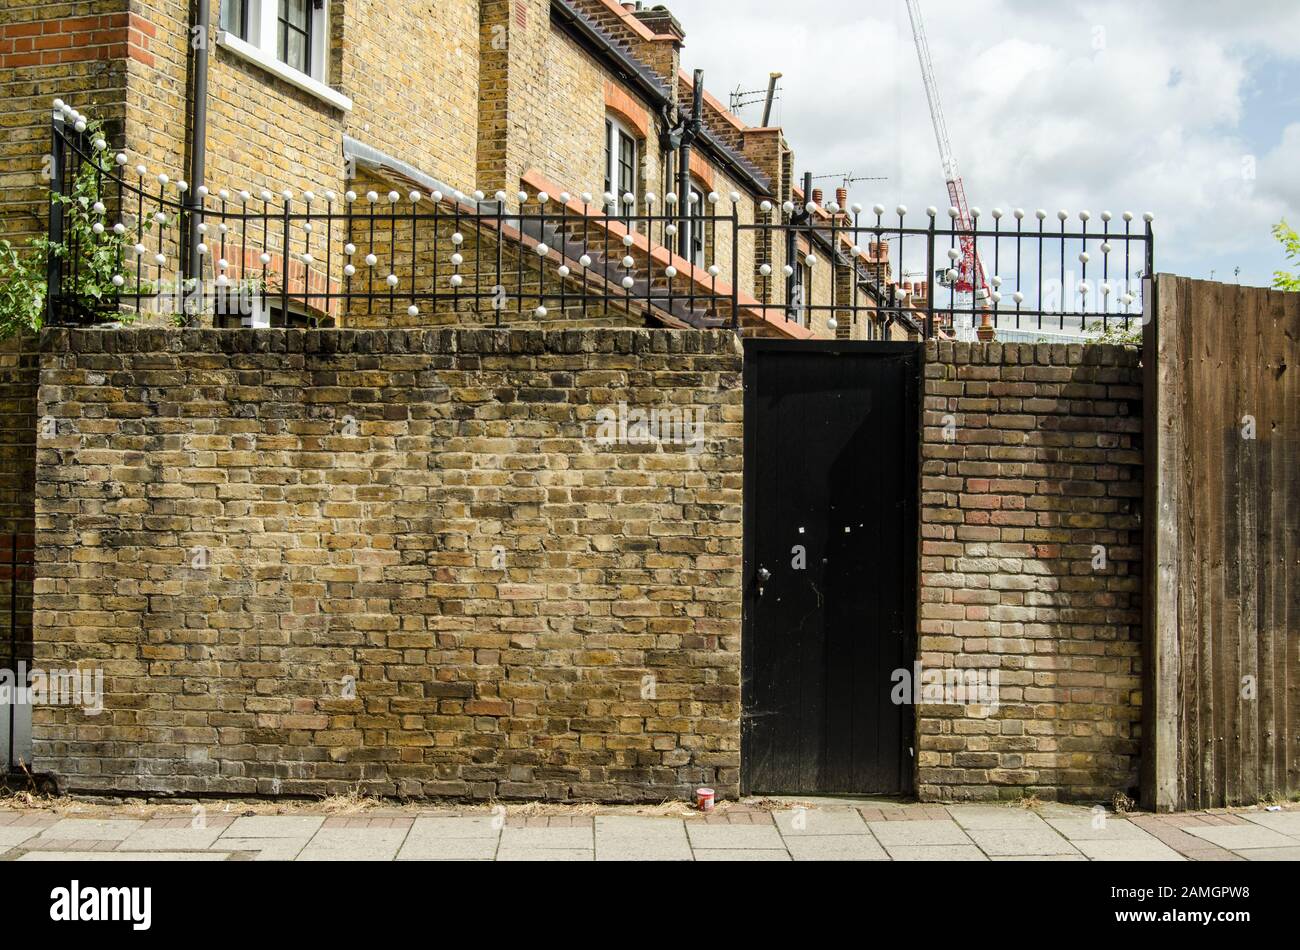 Ungewöhnliche Geländer an der Webber Street, Southwark, London. Das Design der viktorianischen Geländer ist ein Rätsel, bei dem einige denken, dass die weißen Kugeln sich auf m beziehen Stockfoto